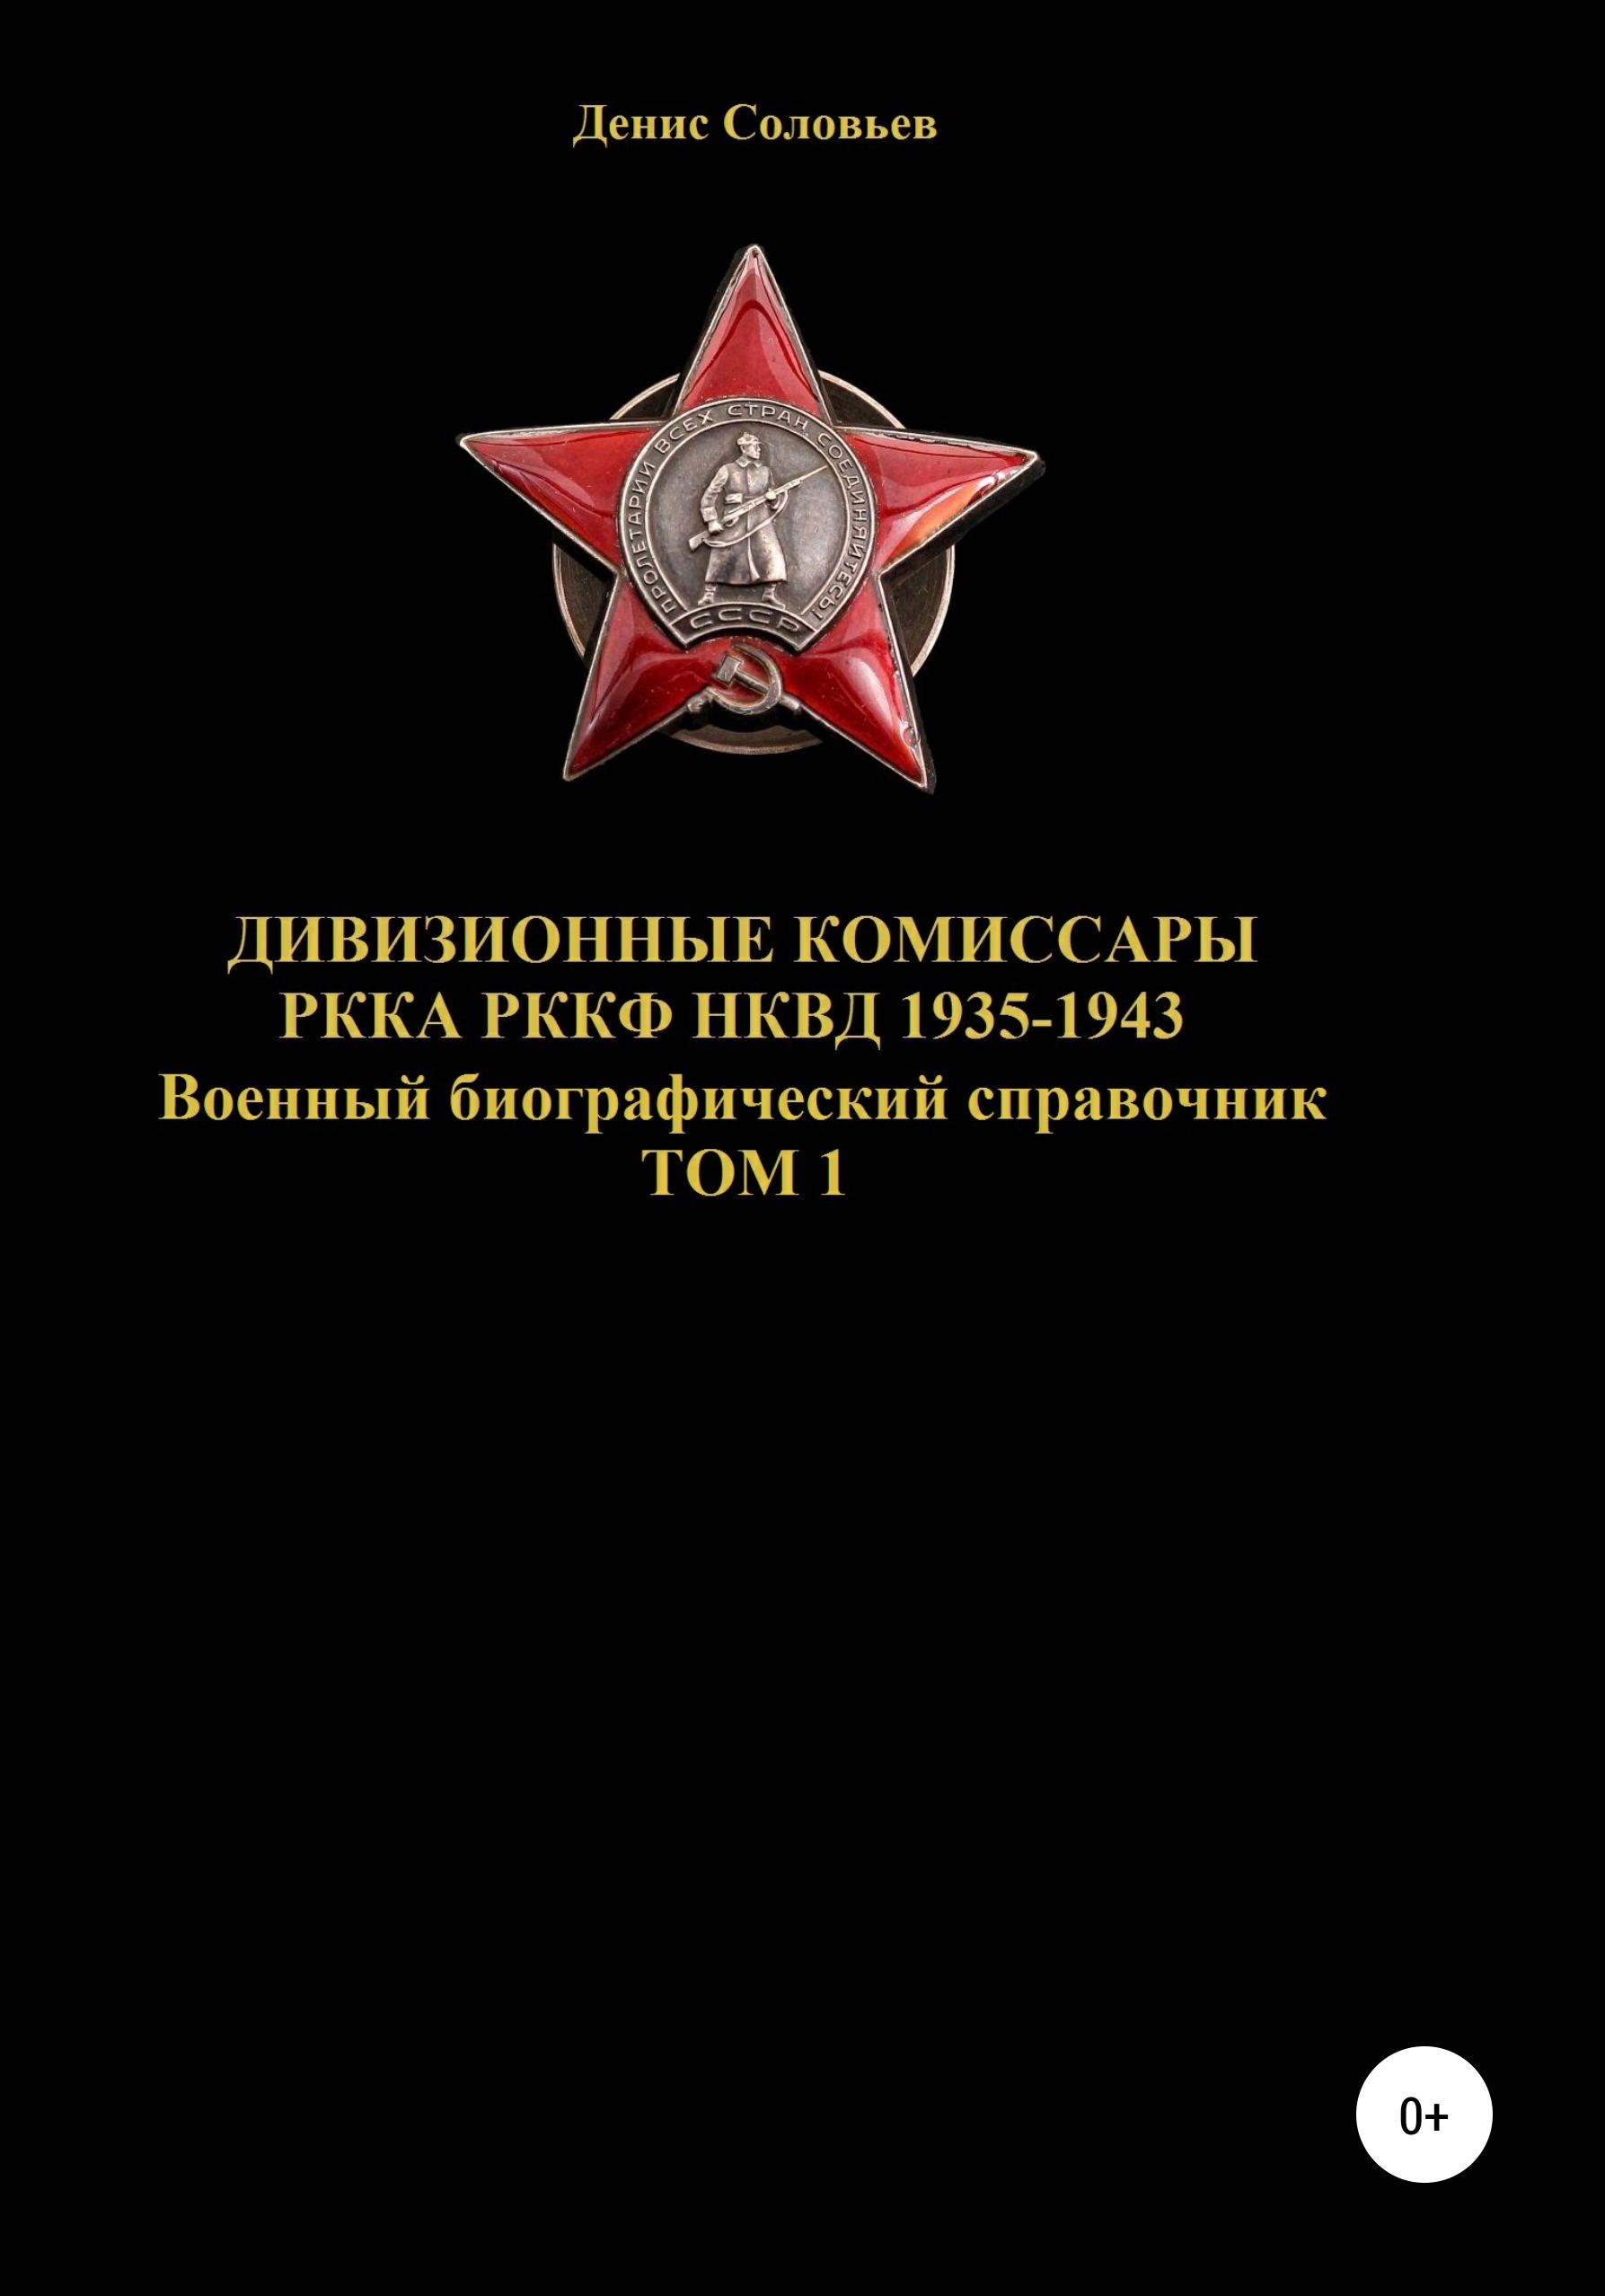 Дивизионные комиссары РККА РККФ НКВД 1935-1943